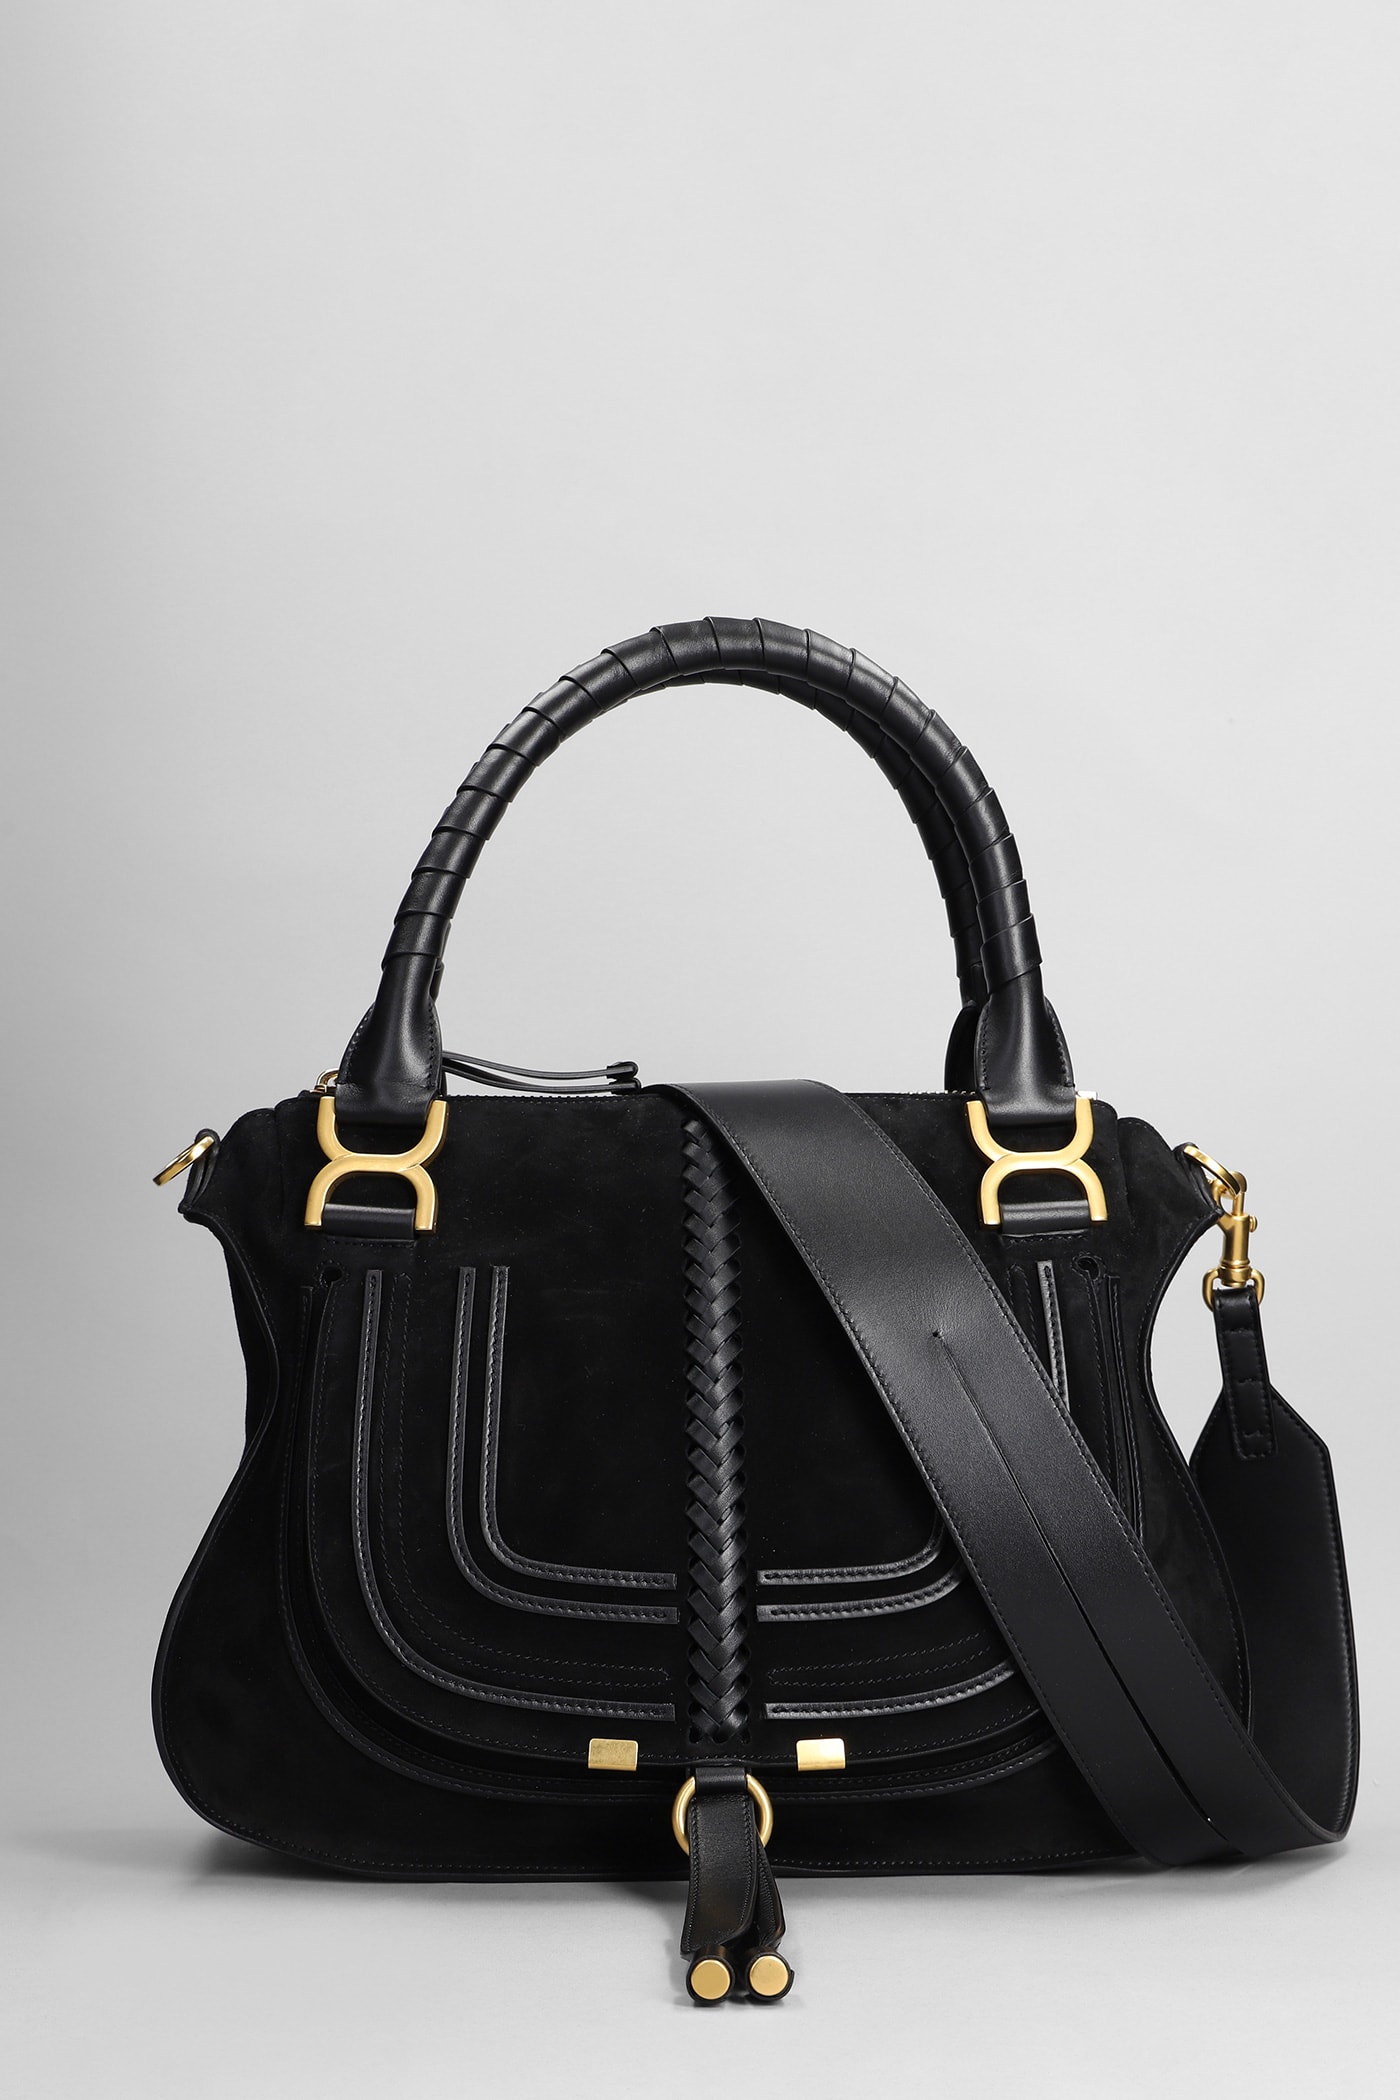 Chloé Mercie Shoulder Bag In Black Leather